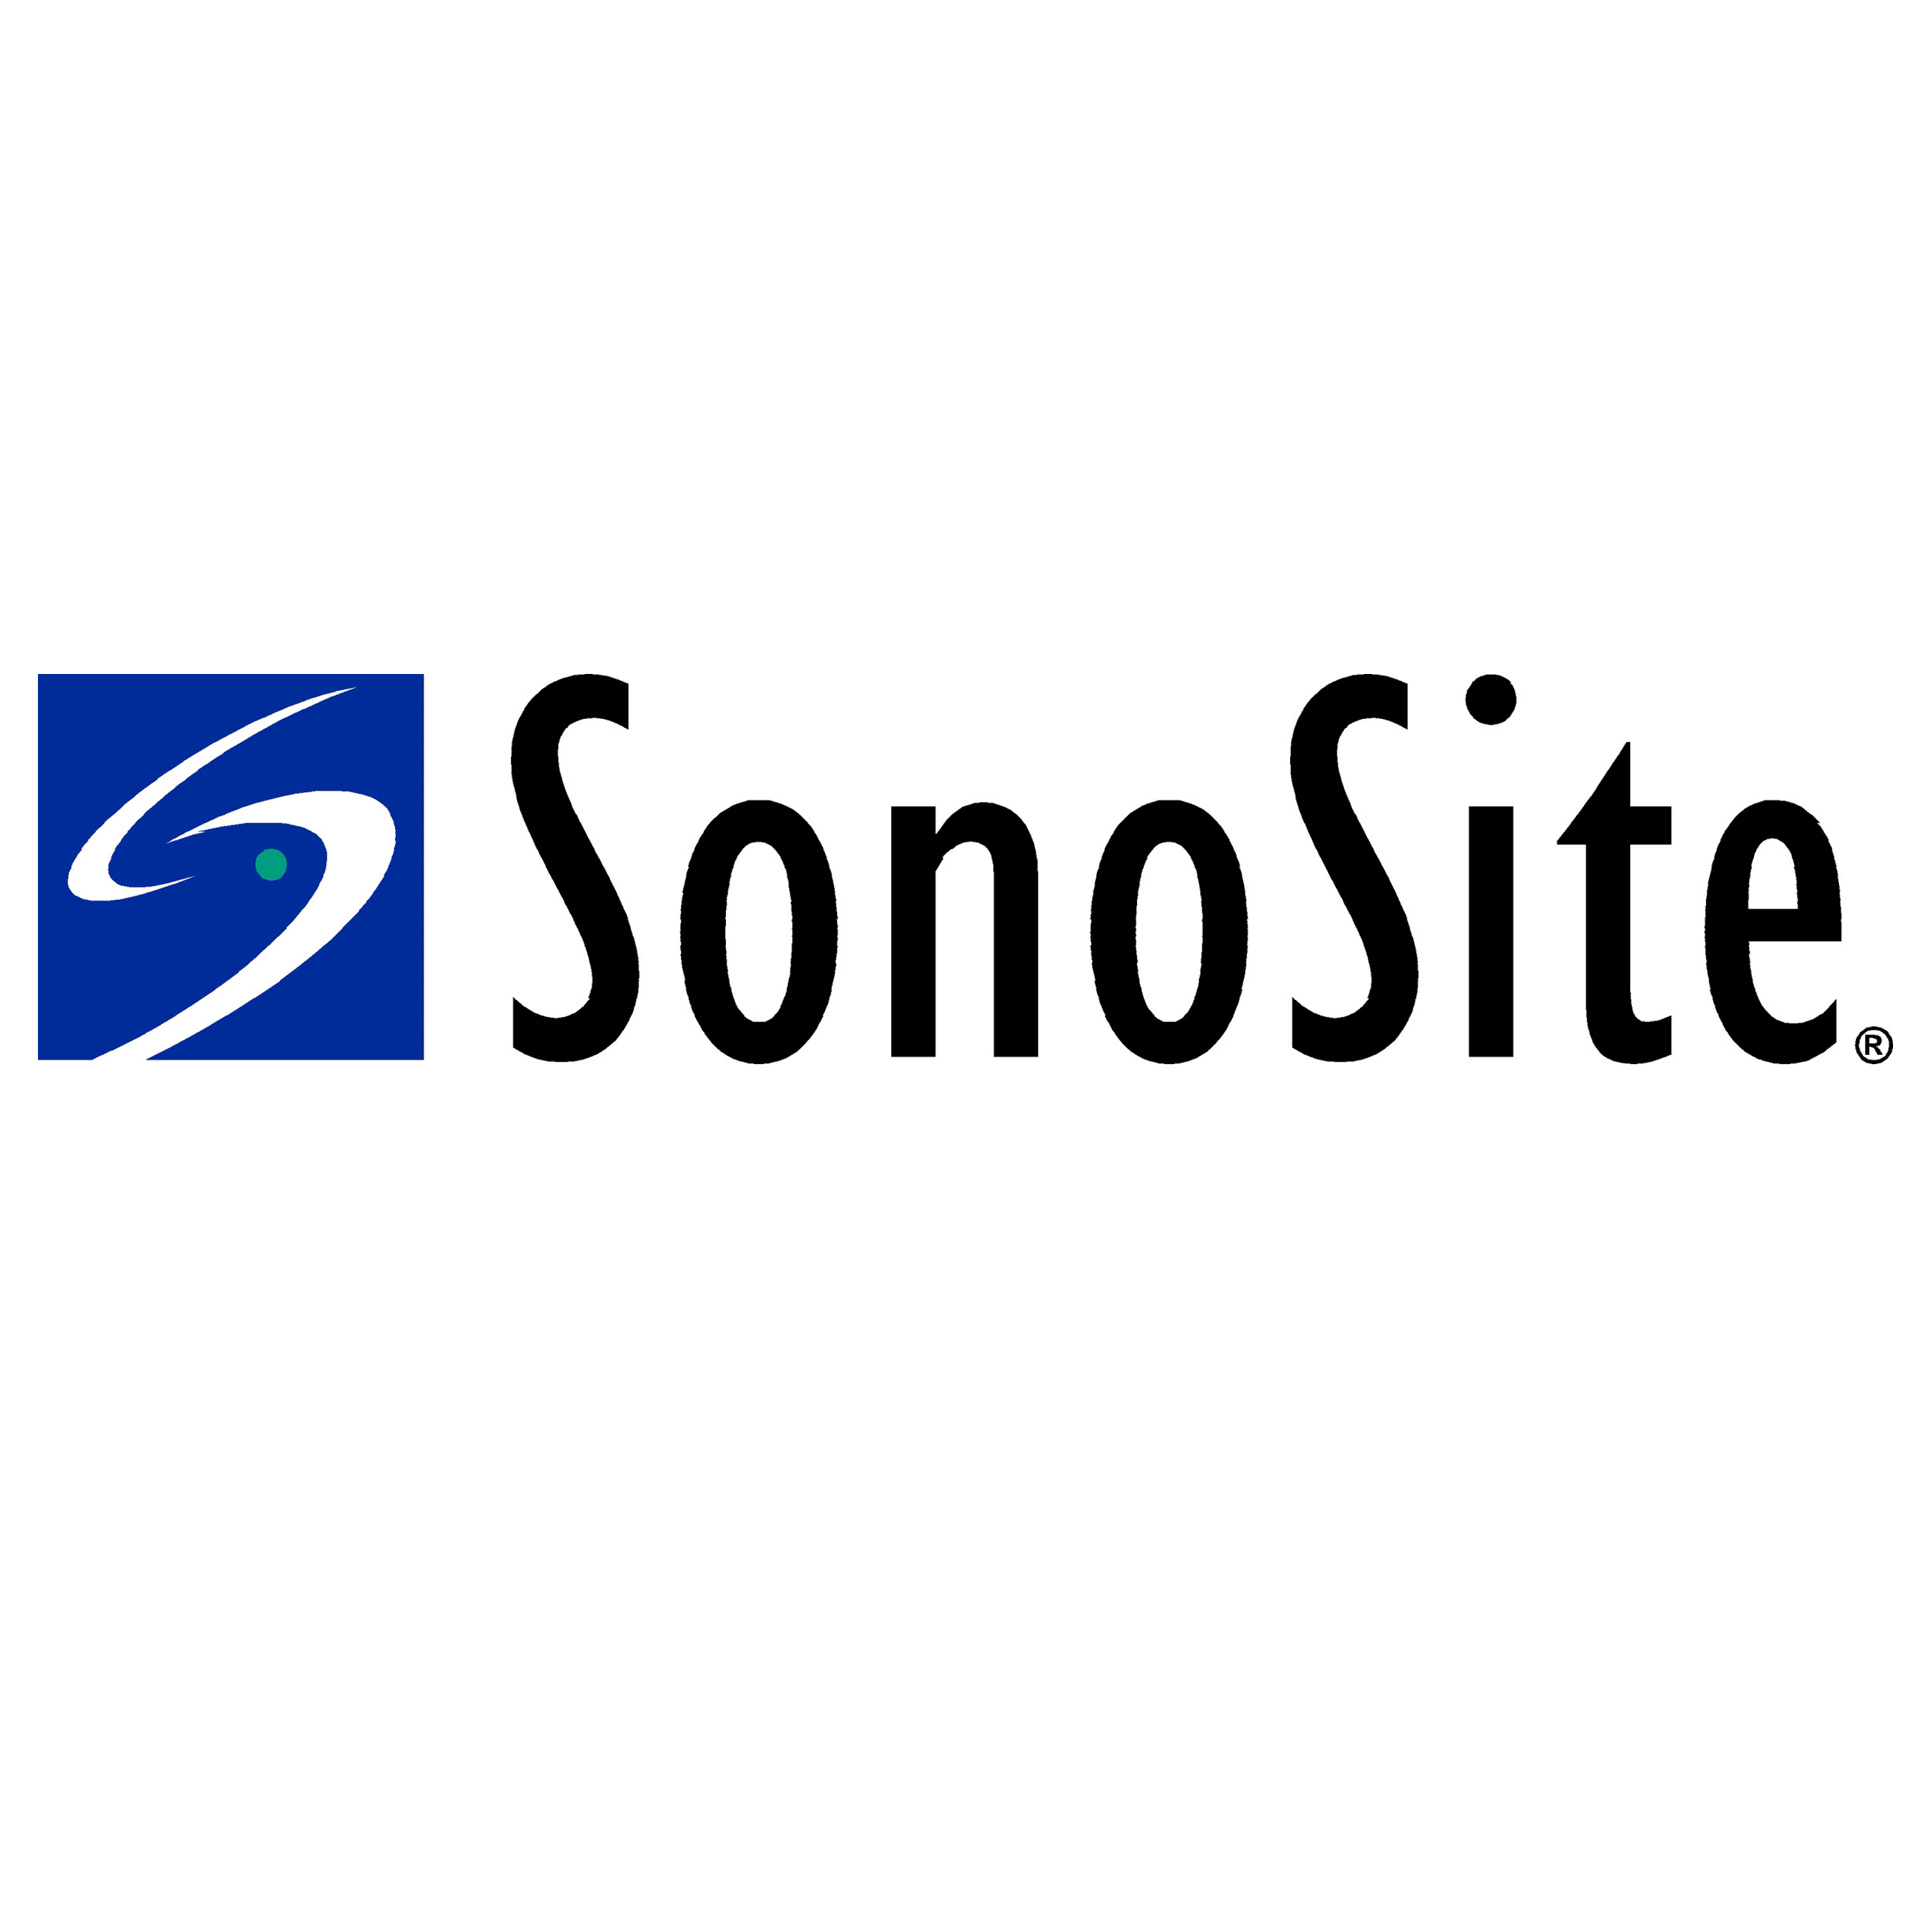 Equiptrack includes SonoSite equipment